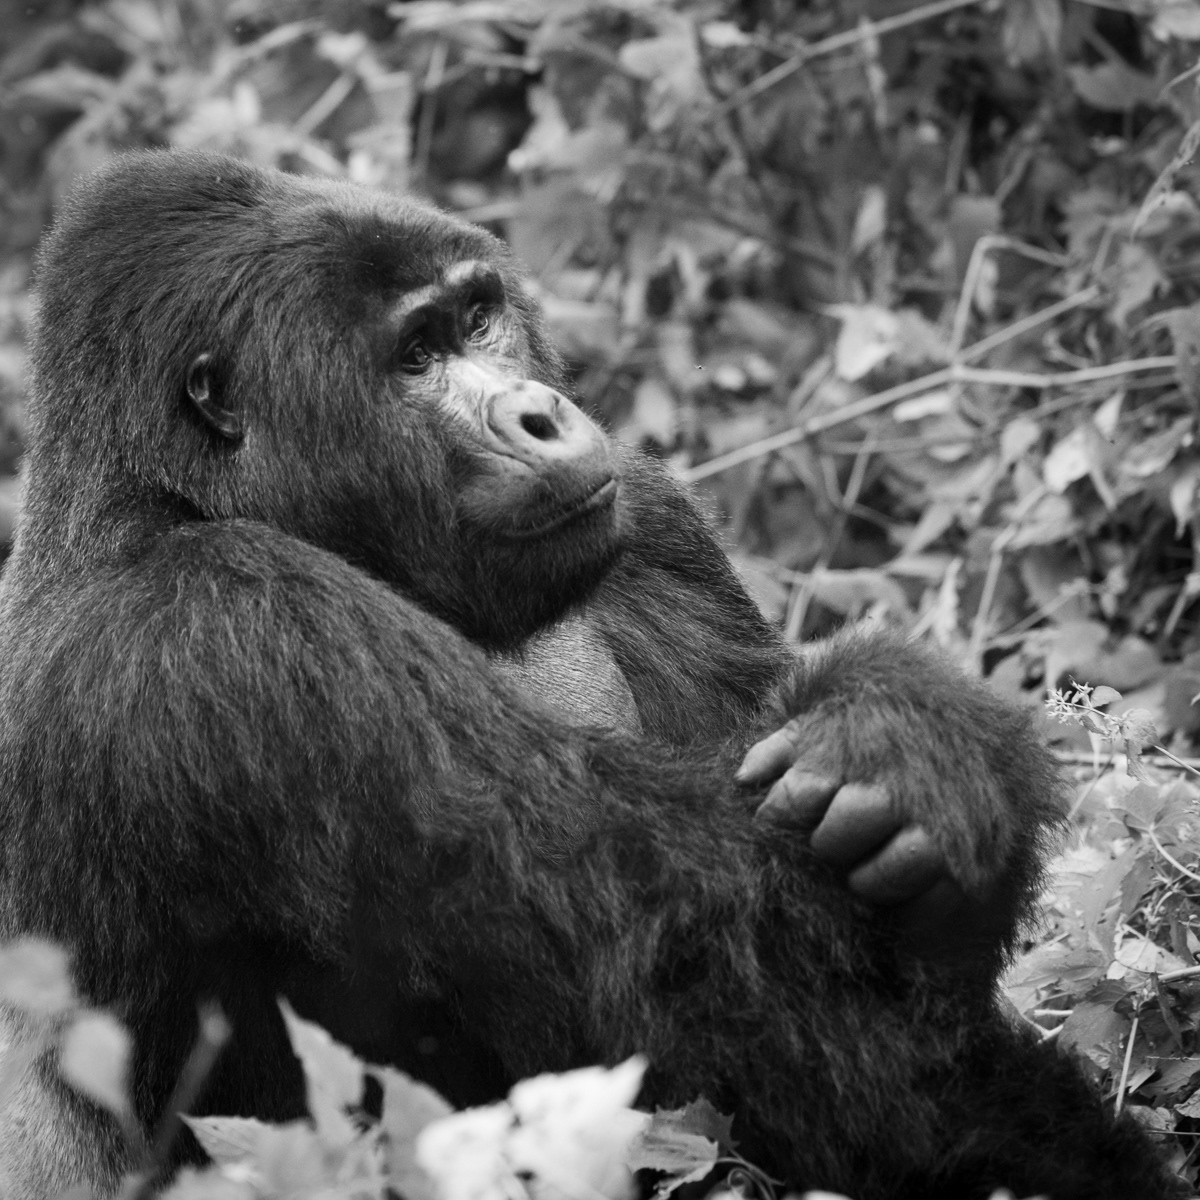 animals black and white bwindi national park fineartphotography gorilla gorillatrecking gorillatrekking portrait primate wildifephotography